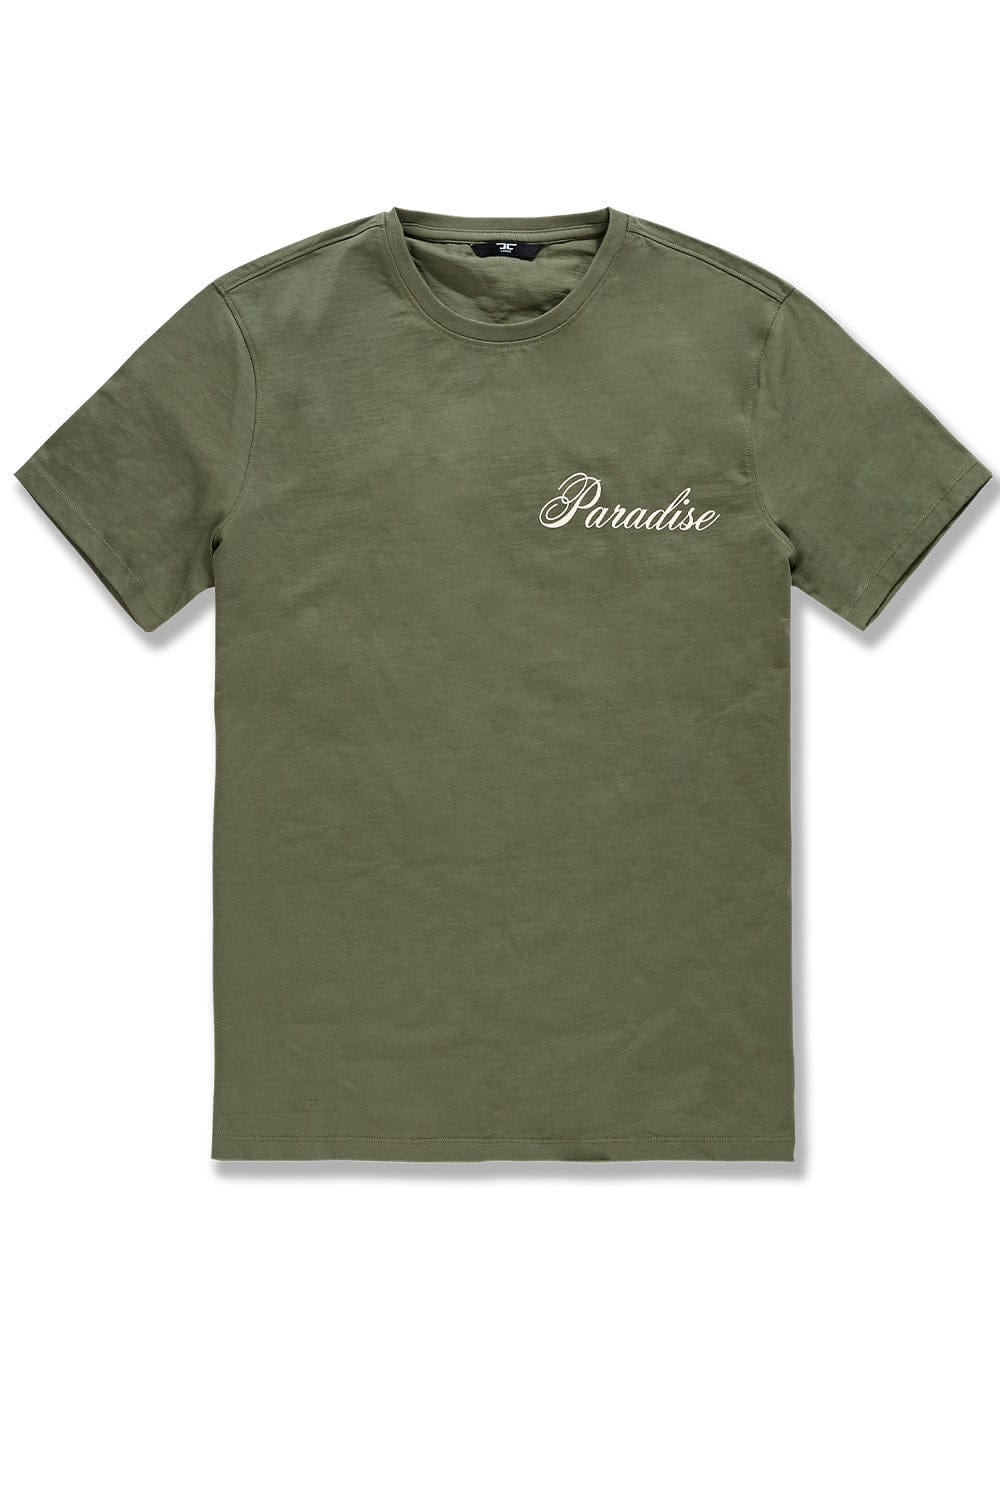 BB Paradise T-Shirt (Olive)